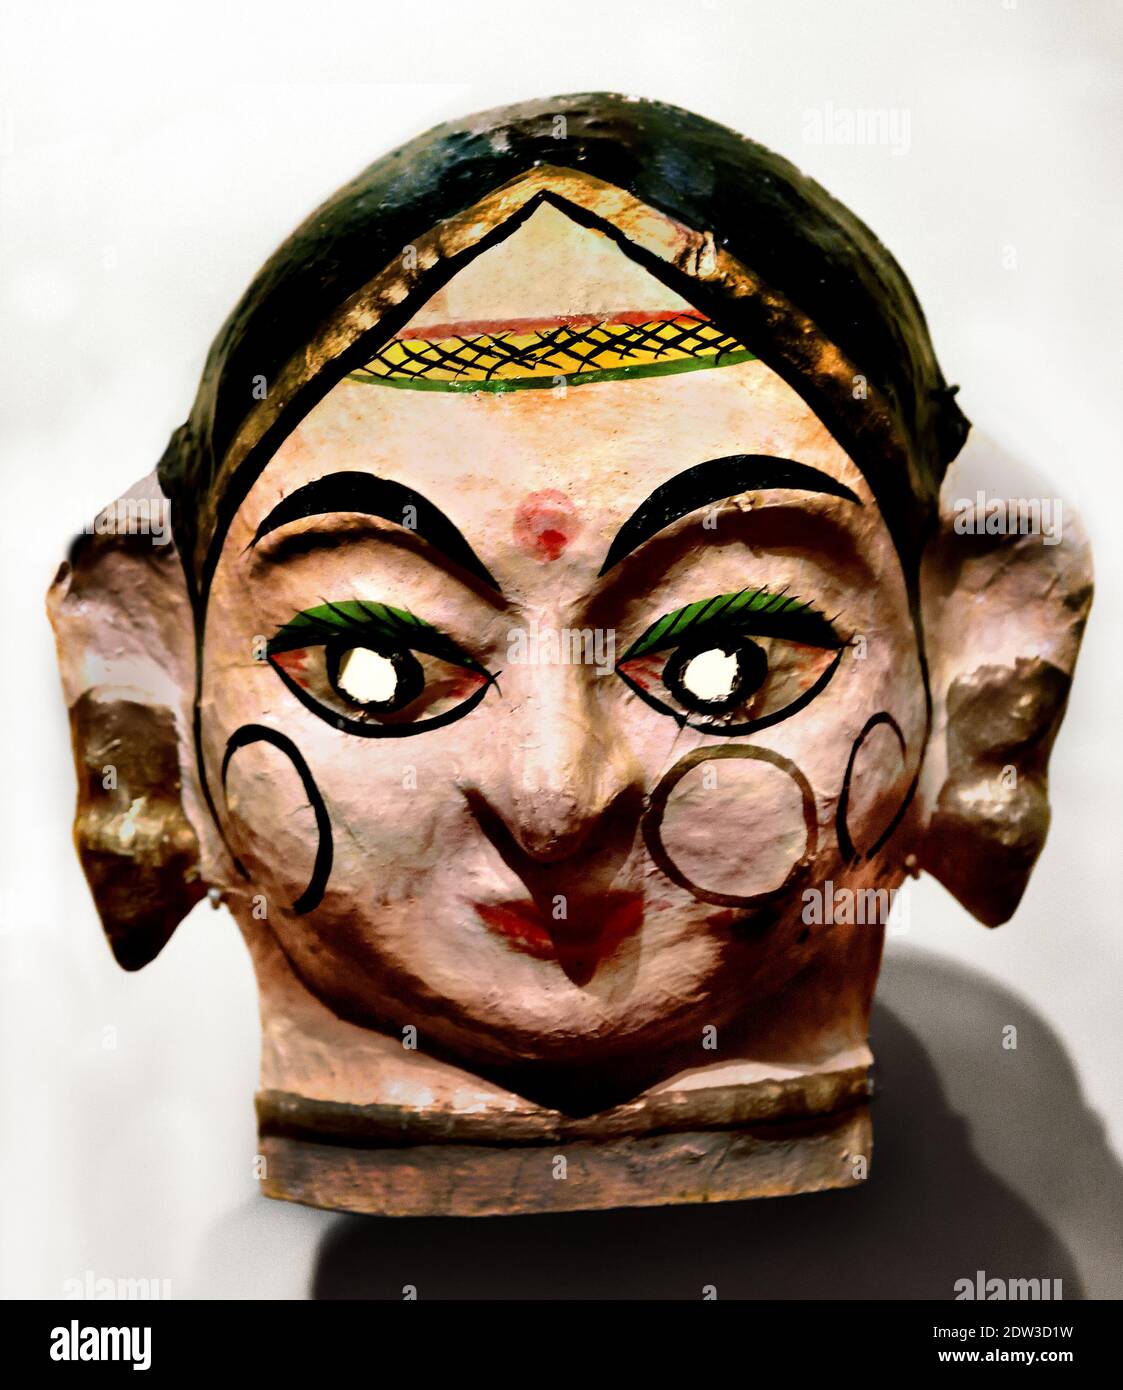 Festival de masque de danse des pièces de Dussehra sont exécutées dans le nord de l'Inde, en l'honneur du dieu Rama, le héros de l'Indien épique de Ramayana, (Dieu hindou Rama, Râm, Ramachandra. ) Banque D'Images